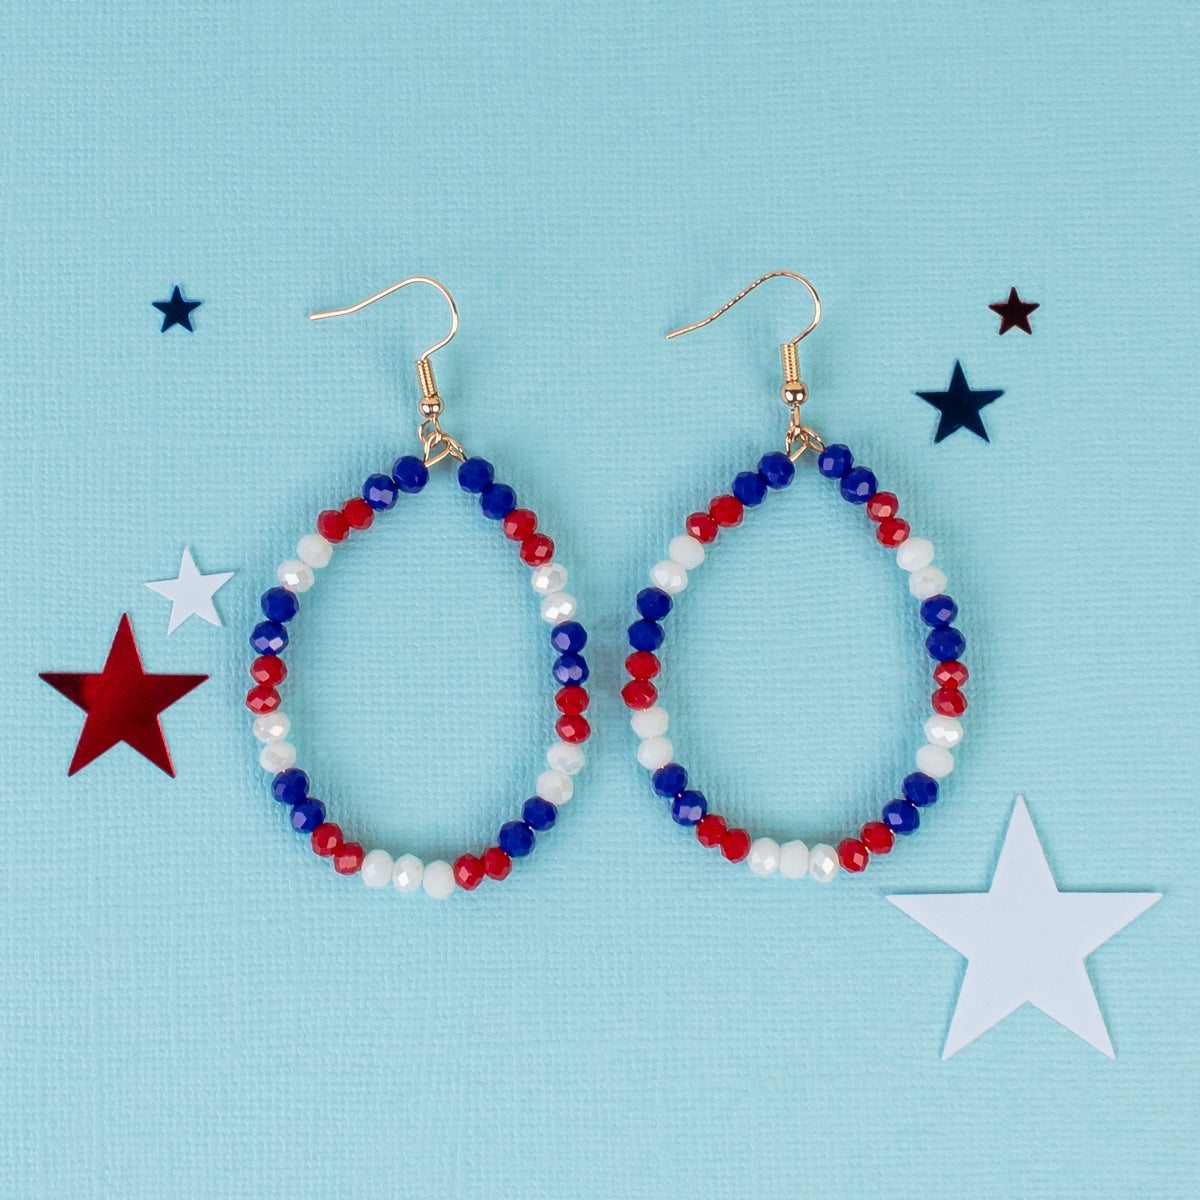 93223 - Crystal Beaded Hoop Earrings - Red, White, & Blue